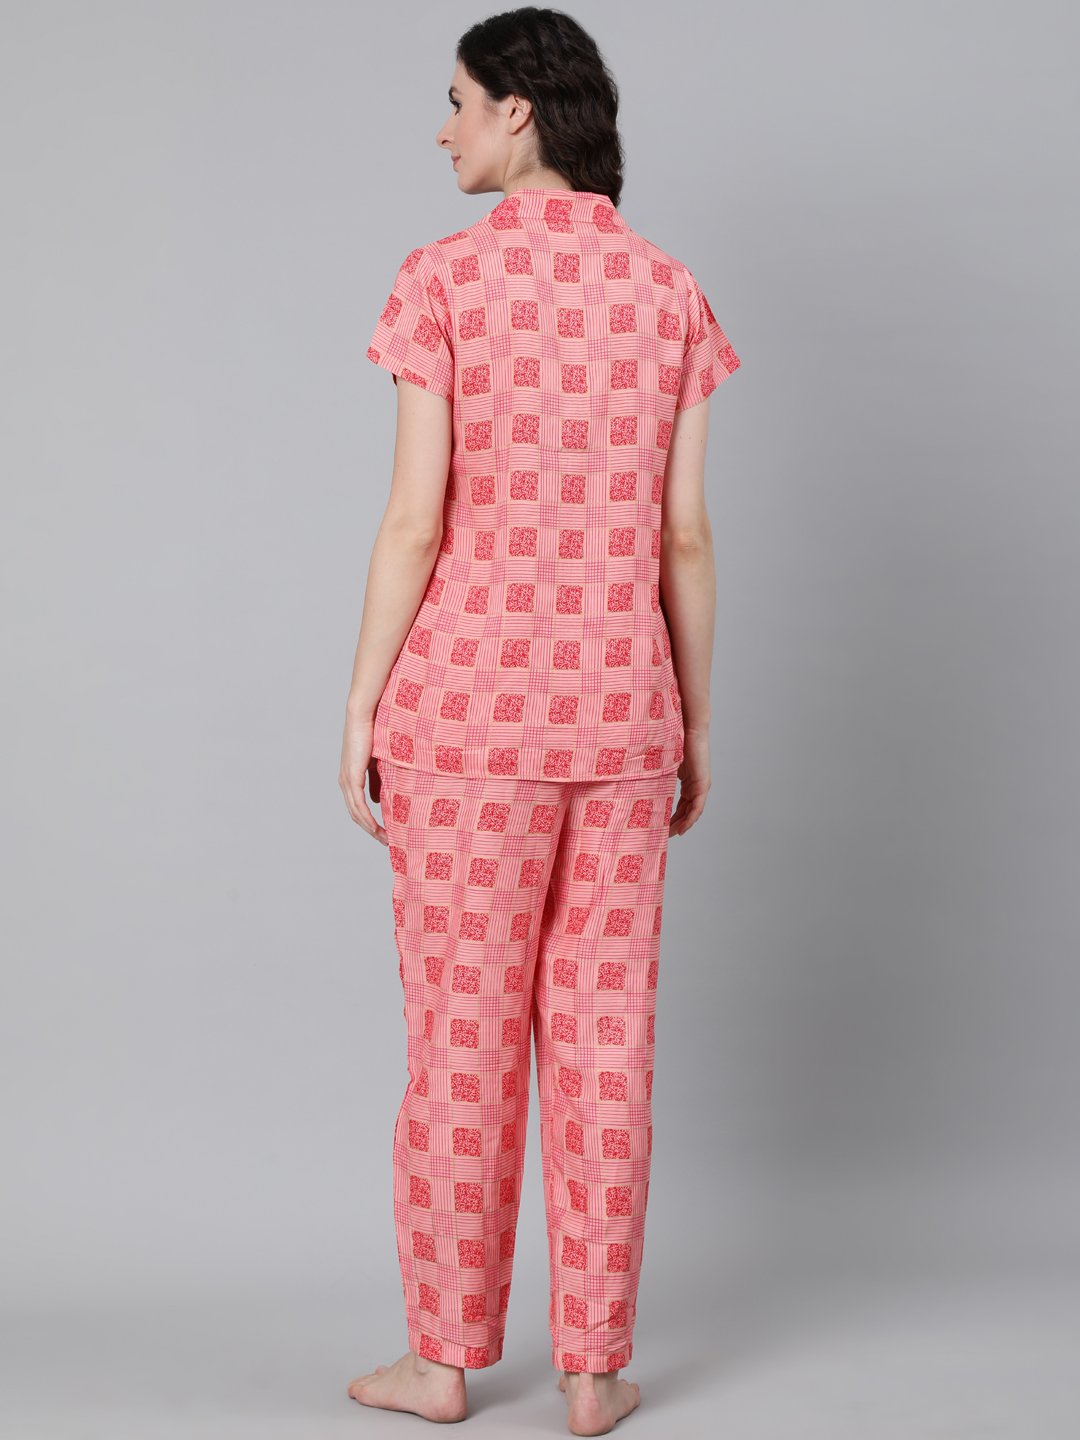 Women's Pink Printed Night Suit - Nayo Clothing